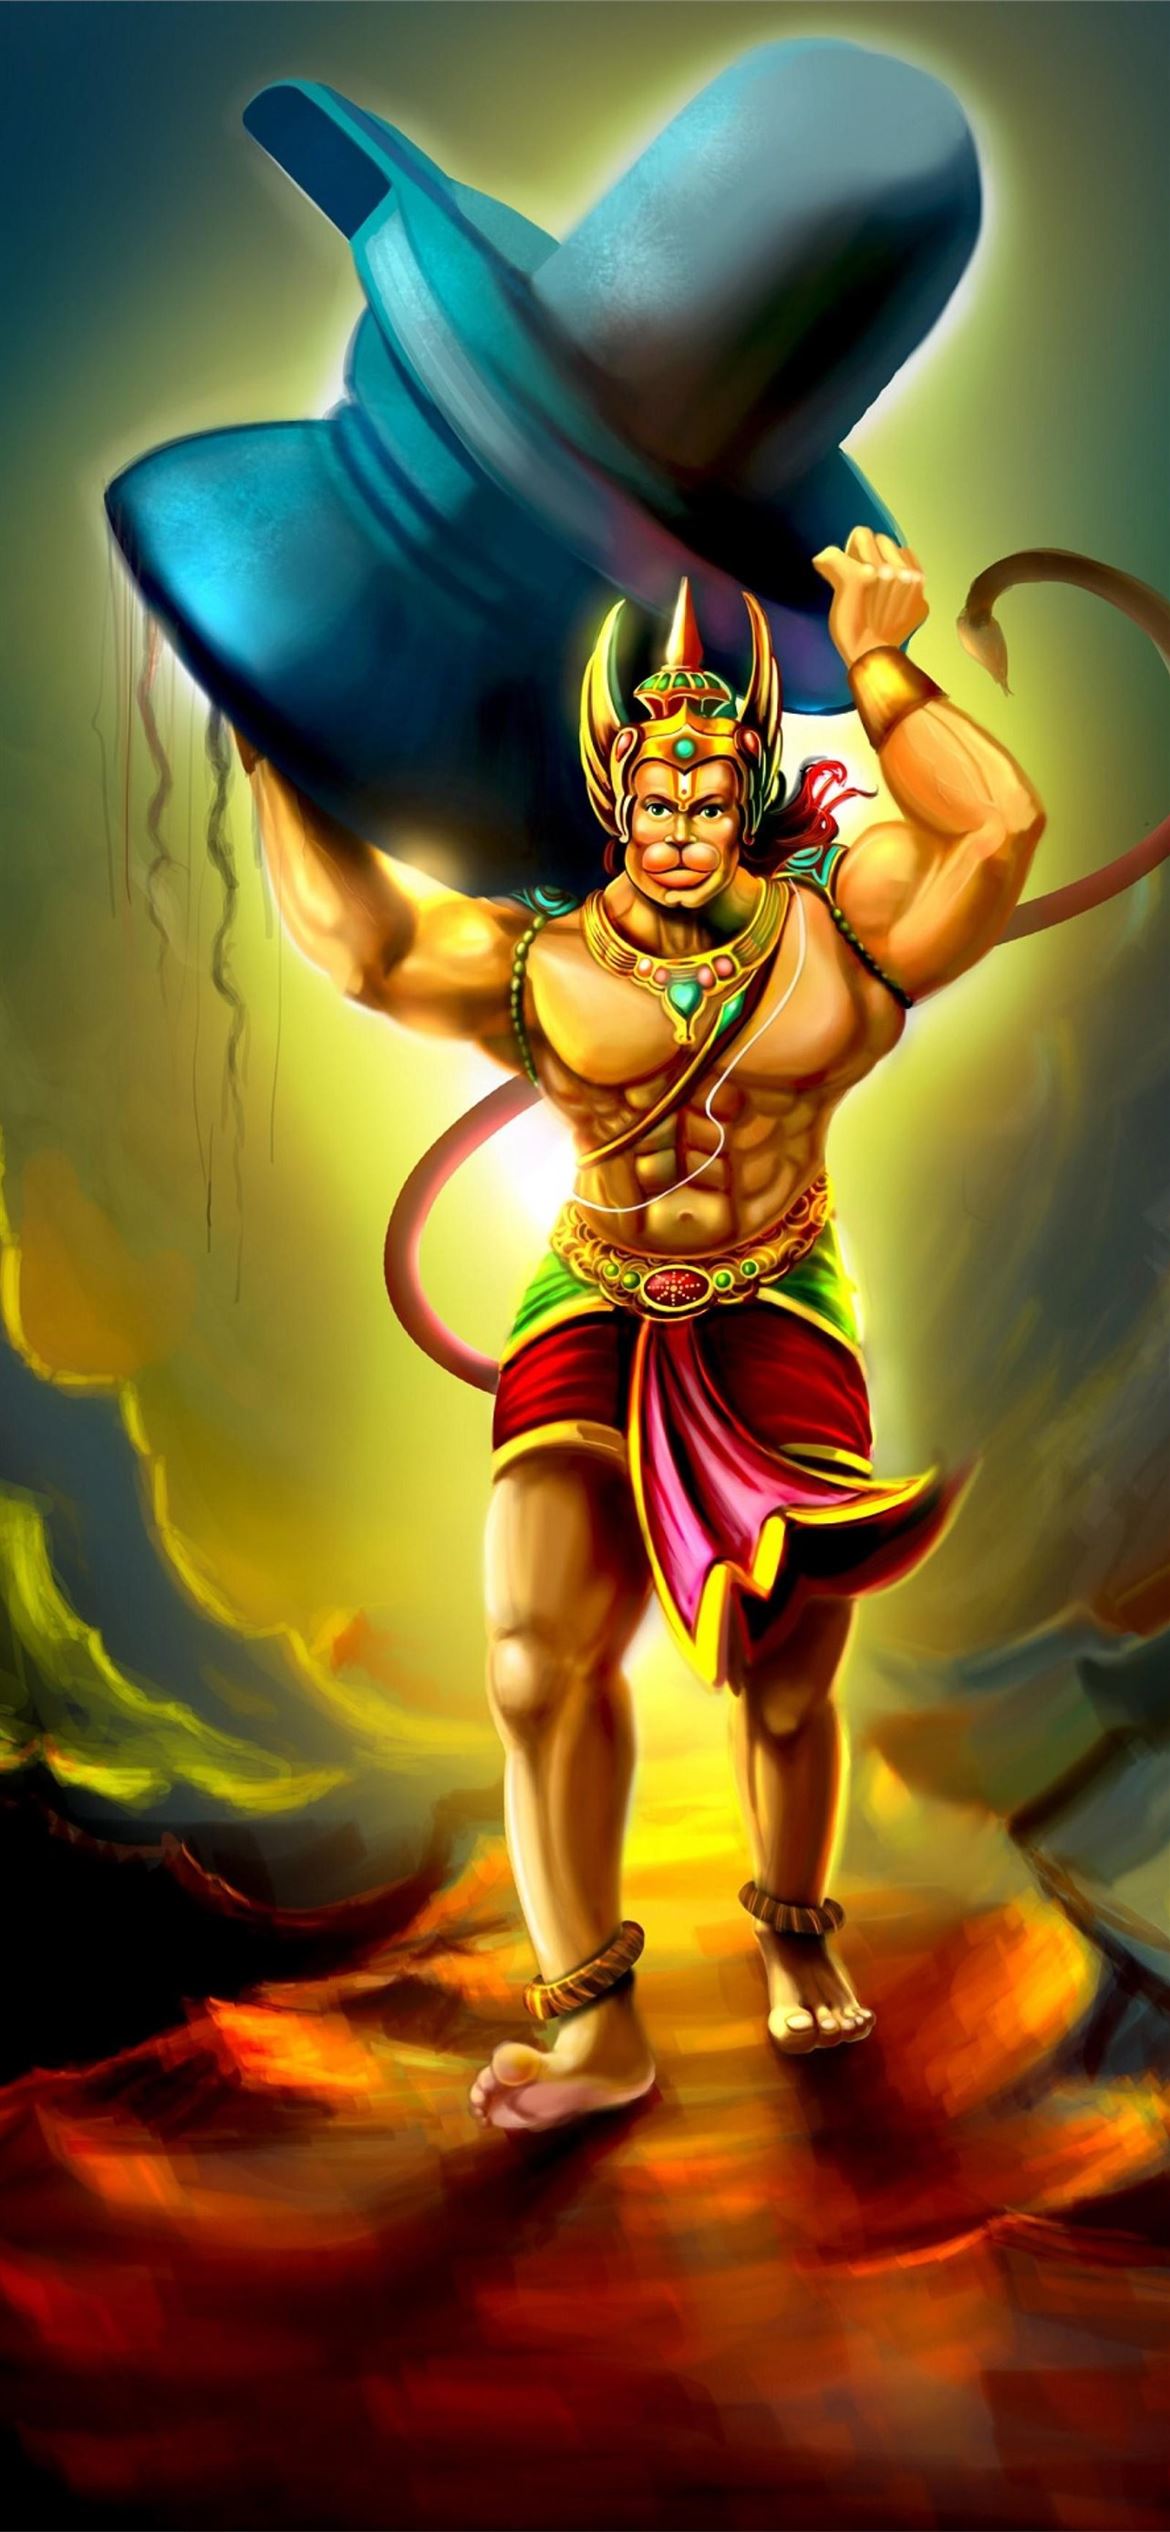 Hanuman 4k Cave iPhone Wallpapers Free Download